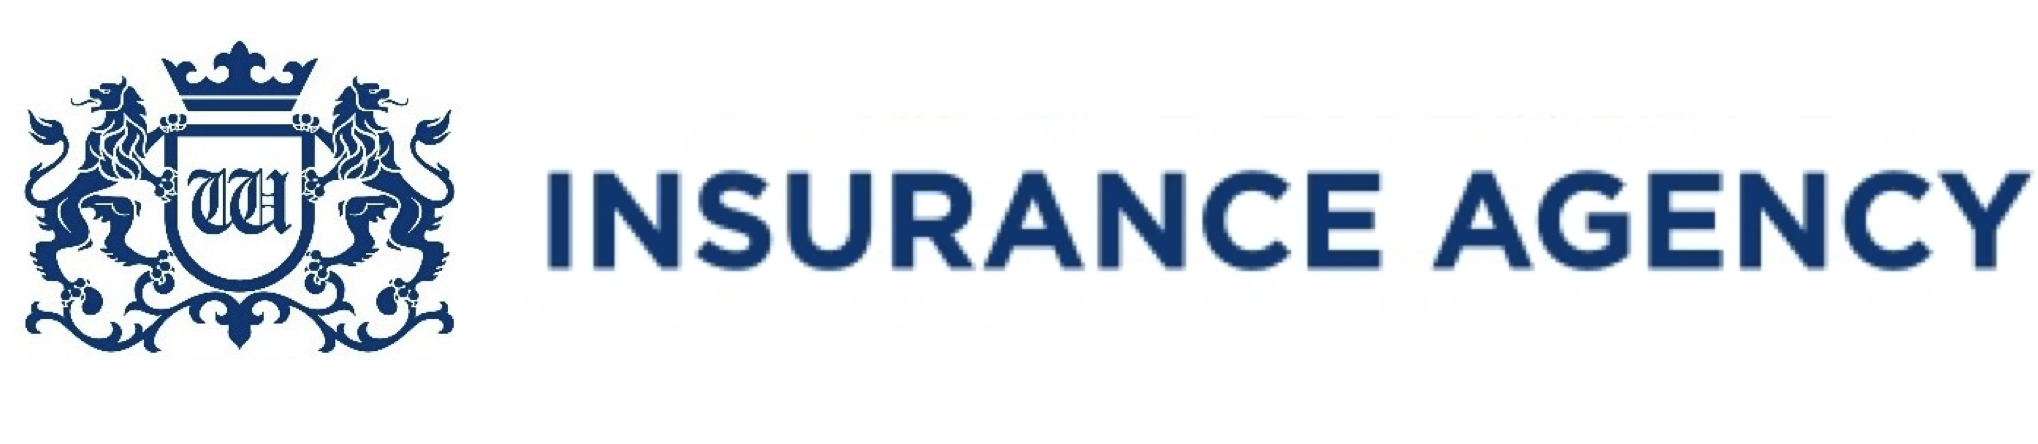 Ubezpieczenia online - Insurance Agency